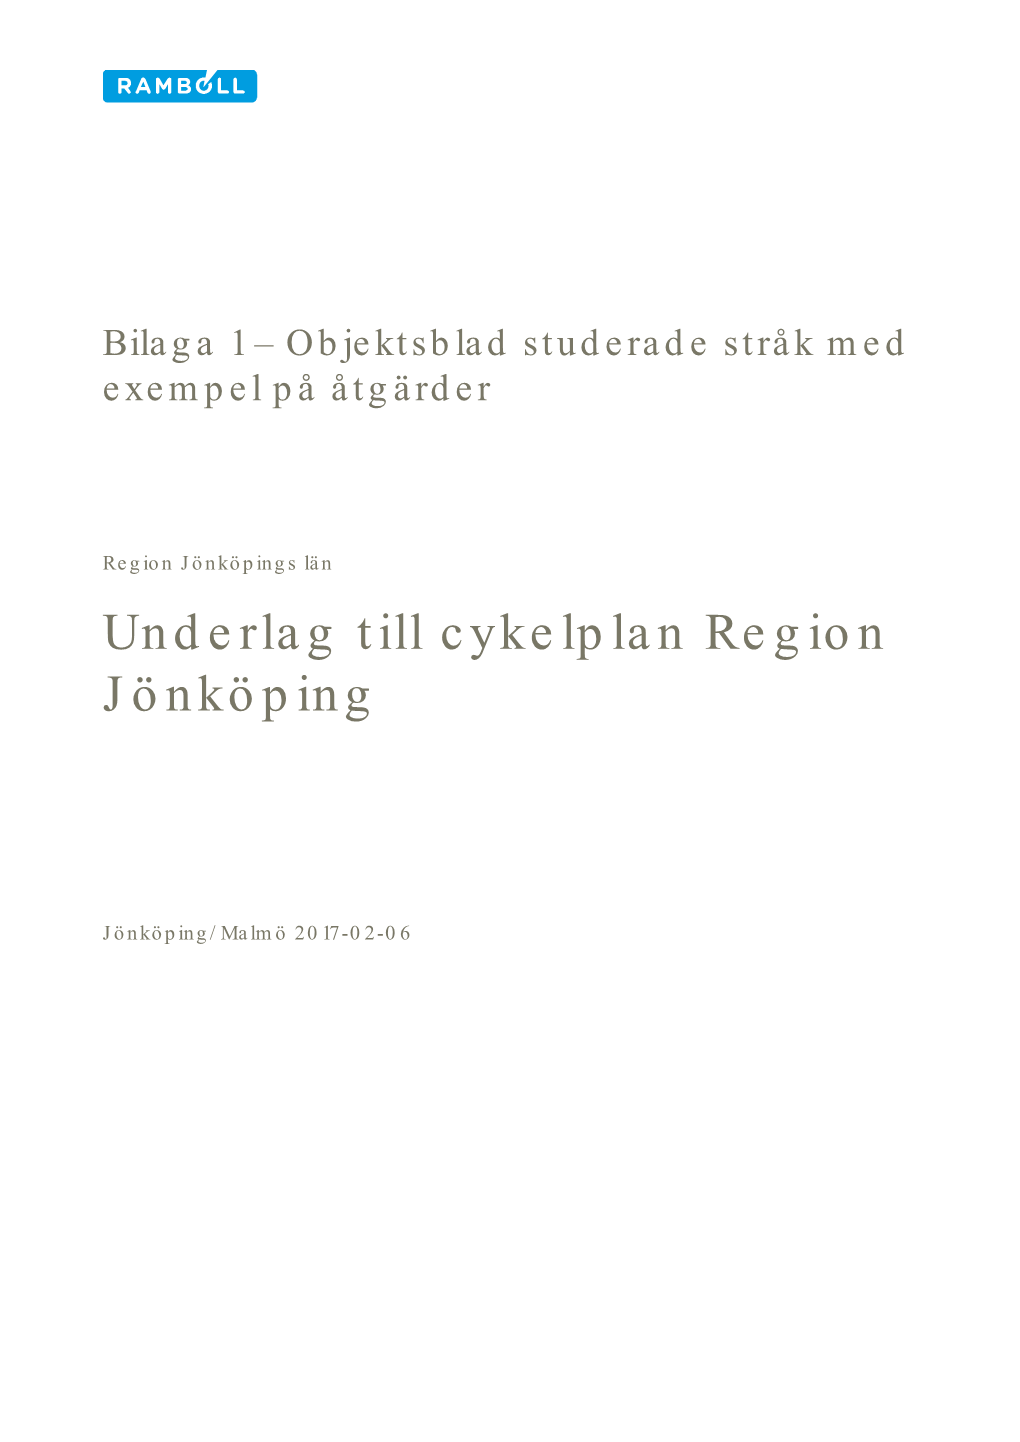 Underlag Till Cykelplan Region Jönköping